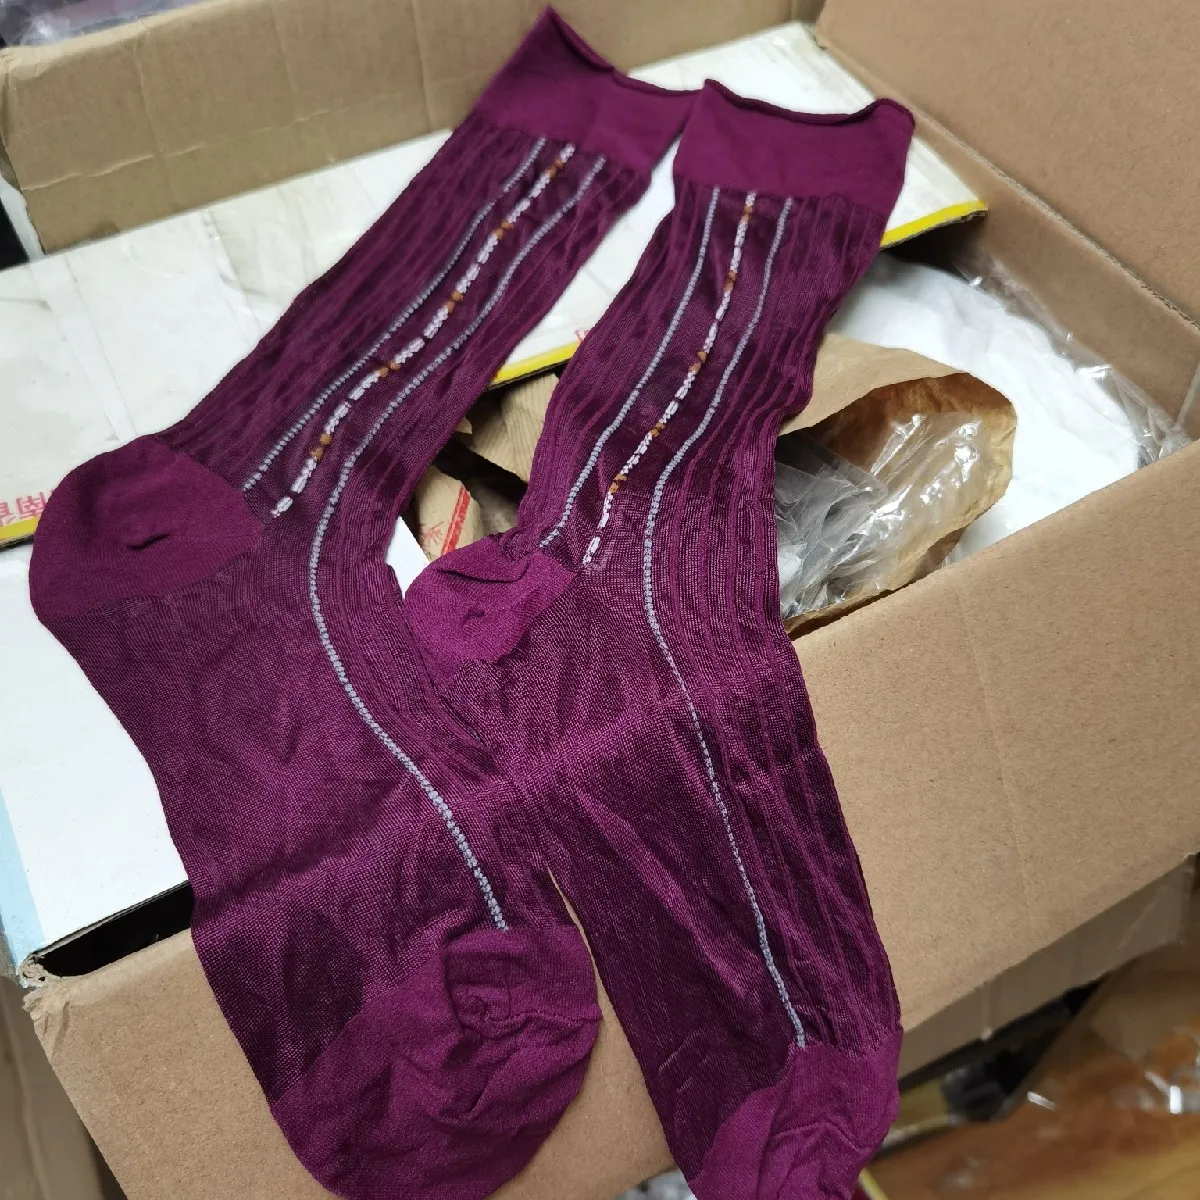 

Носки One And Only из частной коллекции, китайские, культурные, мужские носки для взрослых, мужские носки, фетиш, забавные, прозрачные